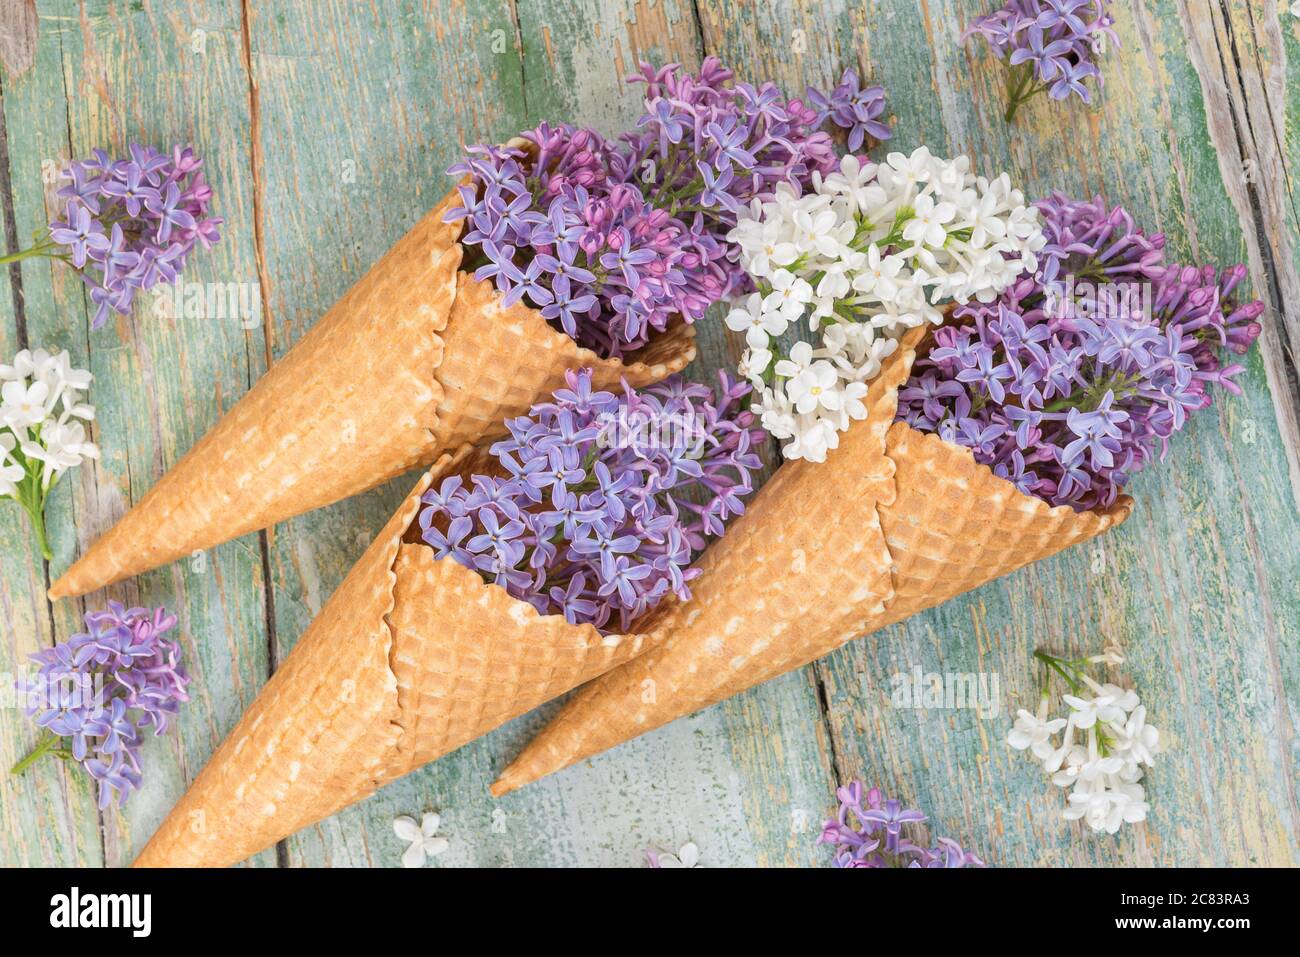 Primavera ancora vita con fiori viola e bianco lilla in coni waffle come gelato sullo sfondo di vecchie tavole blu Foto Stock